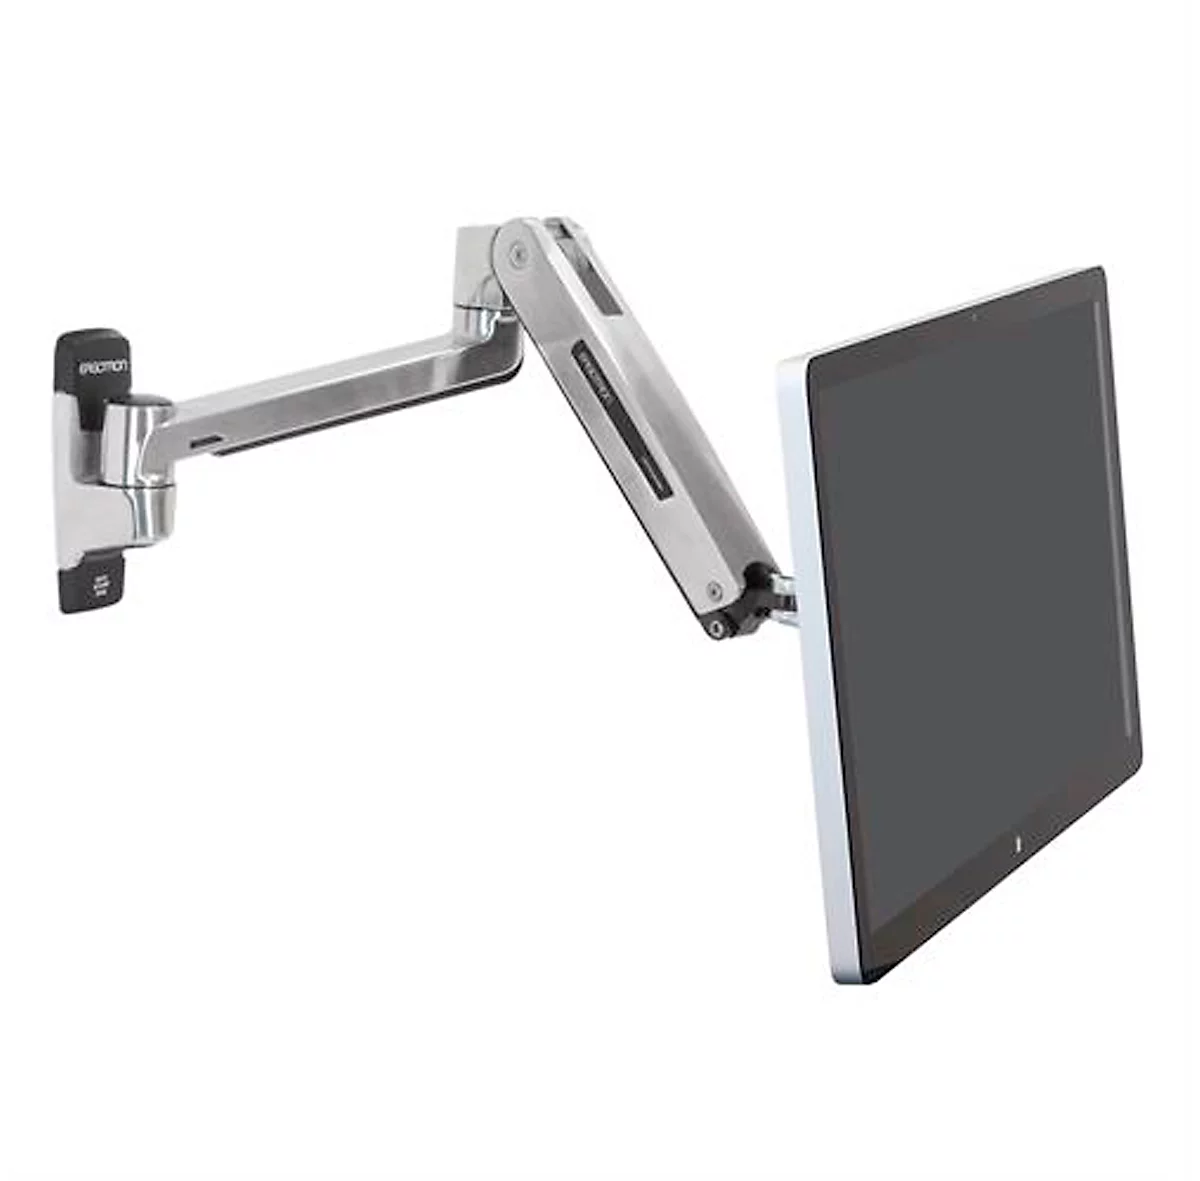 Monitorarm ergotron® LX HD Sit-Stand, Wandhalterung, für 1 Display bis 46″ & bis 13,6 kg, höhen- & tiefenverstellbar, VESA, poliertes Aluminium